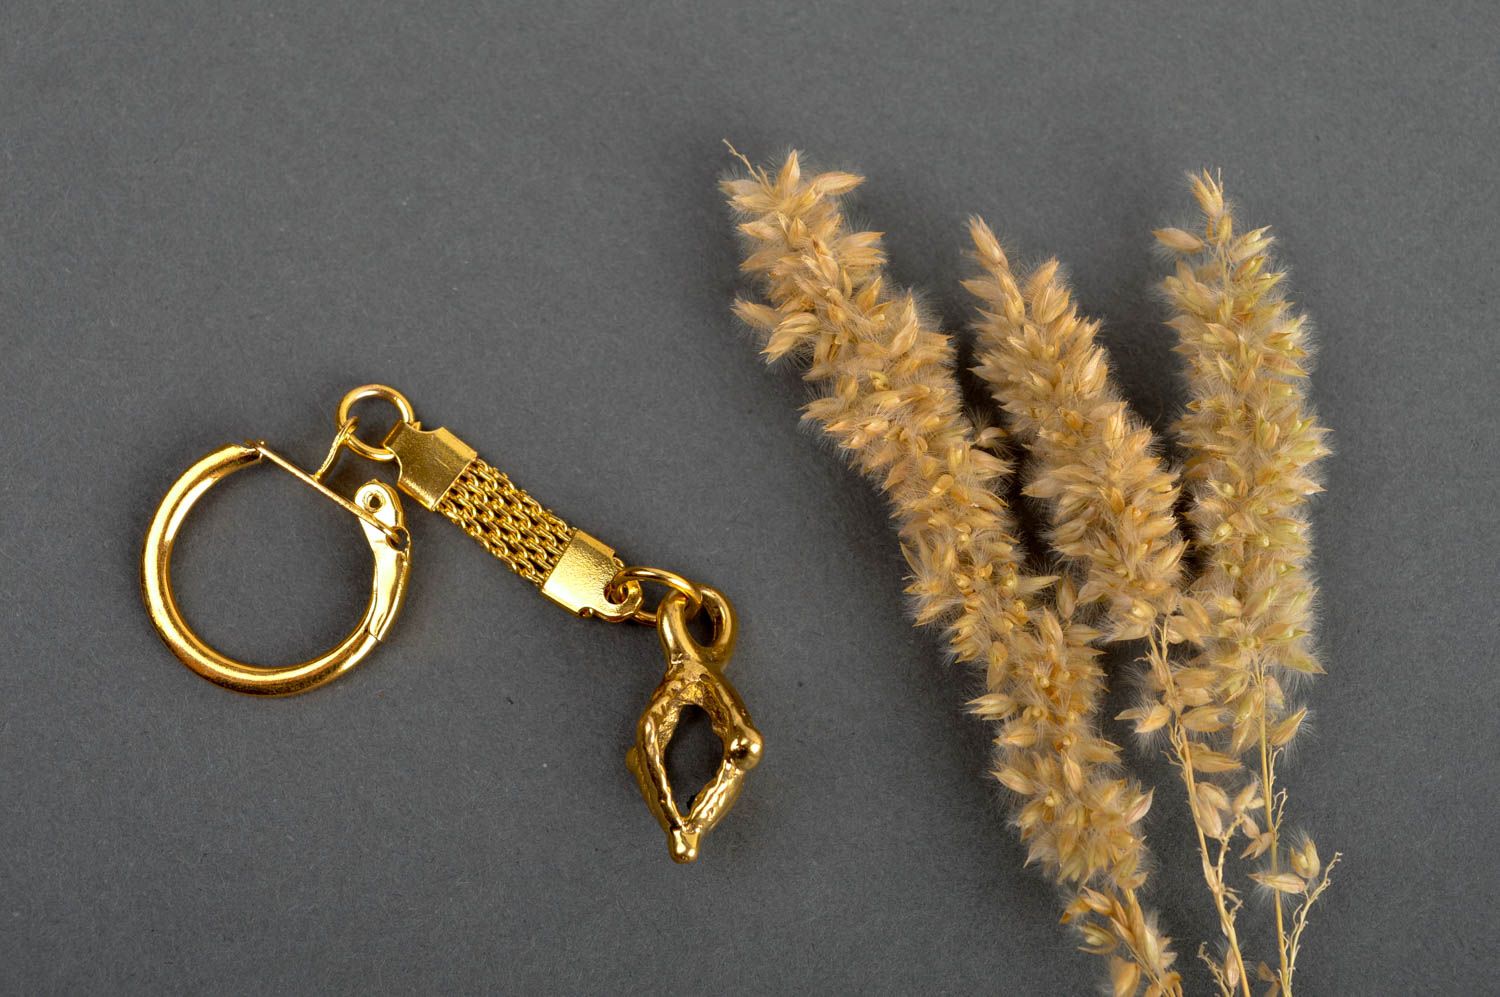 Llavero metálico de color oro artesanal regalo para amigos accesorio para llaves foto 1